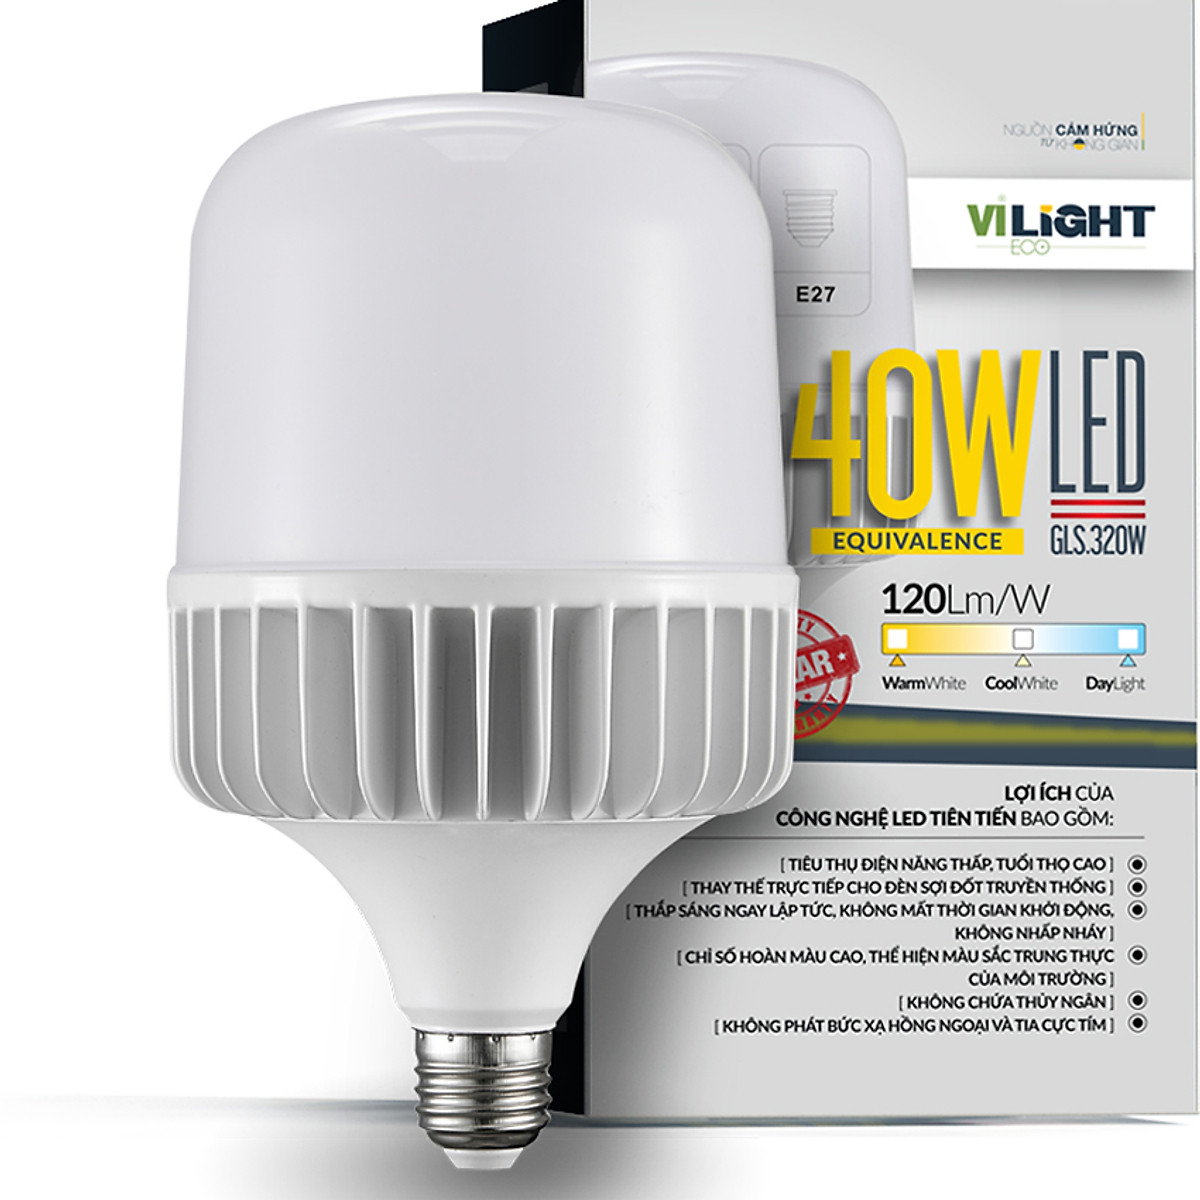 Bóng đèn LED Bulb 40W Vi-Light thân nhôm ánh sáng trắng - Bóng đèn